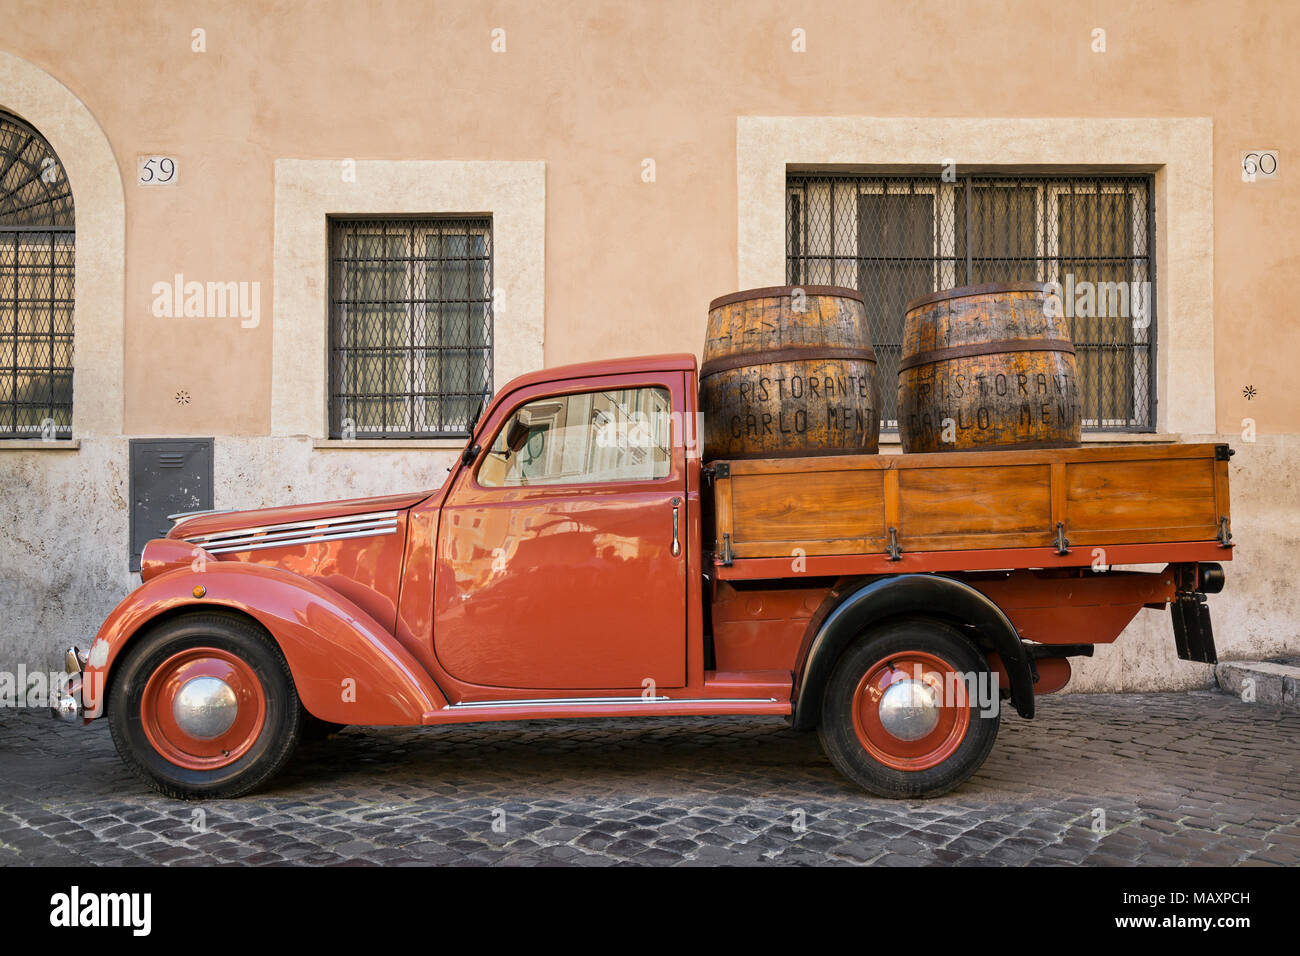 Eine alte rote Fiat 1100 flachen Bett van mit hölzernen Weinfässer im Rücken, außerhalb Ristorante Carlo Menta in Rom, Italien, geparkt. Stockfoto